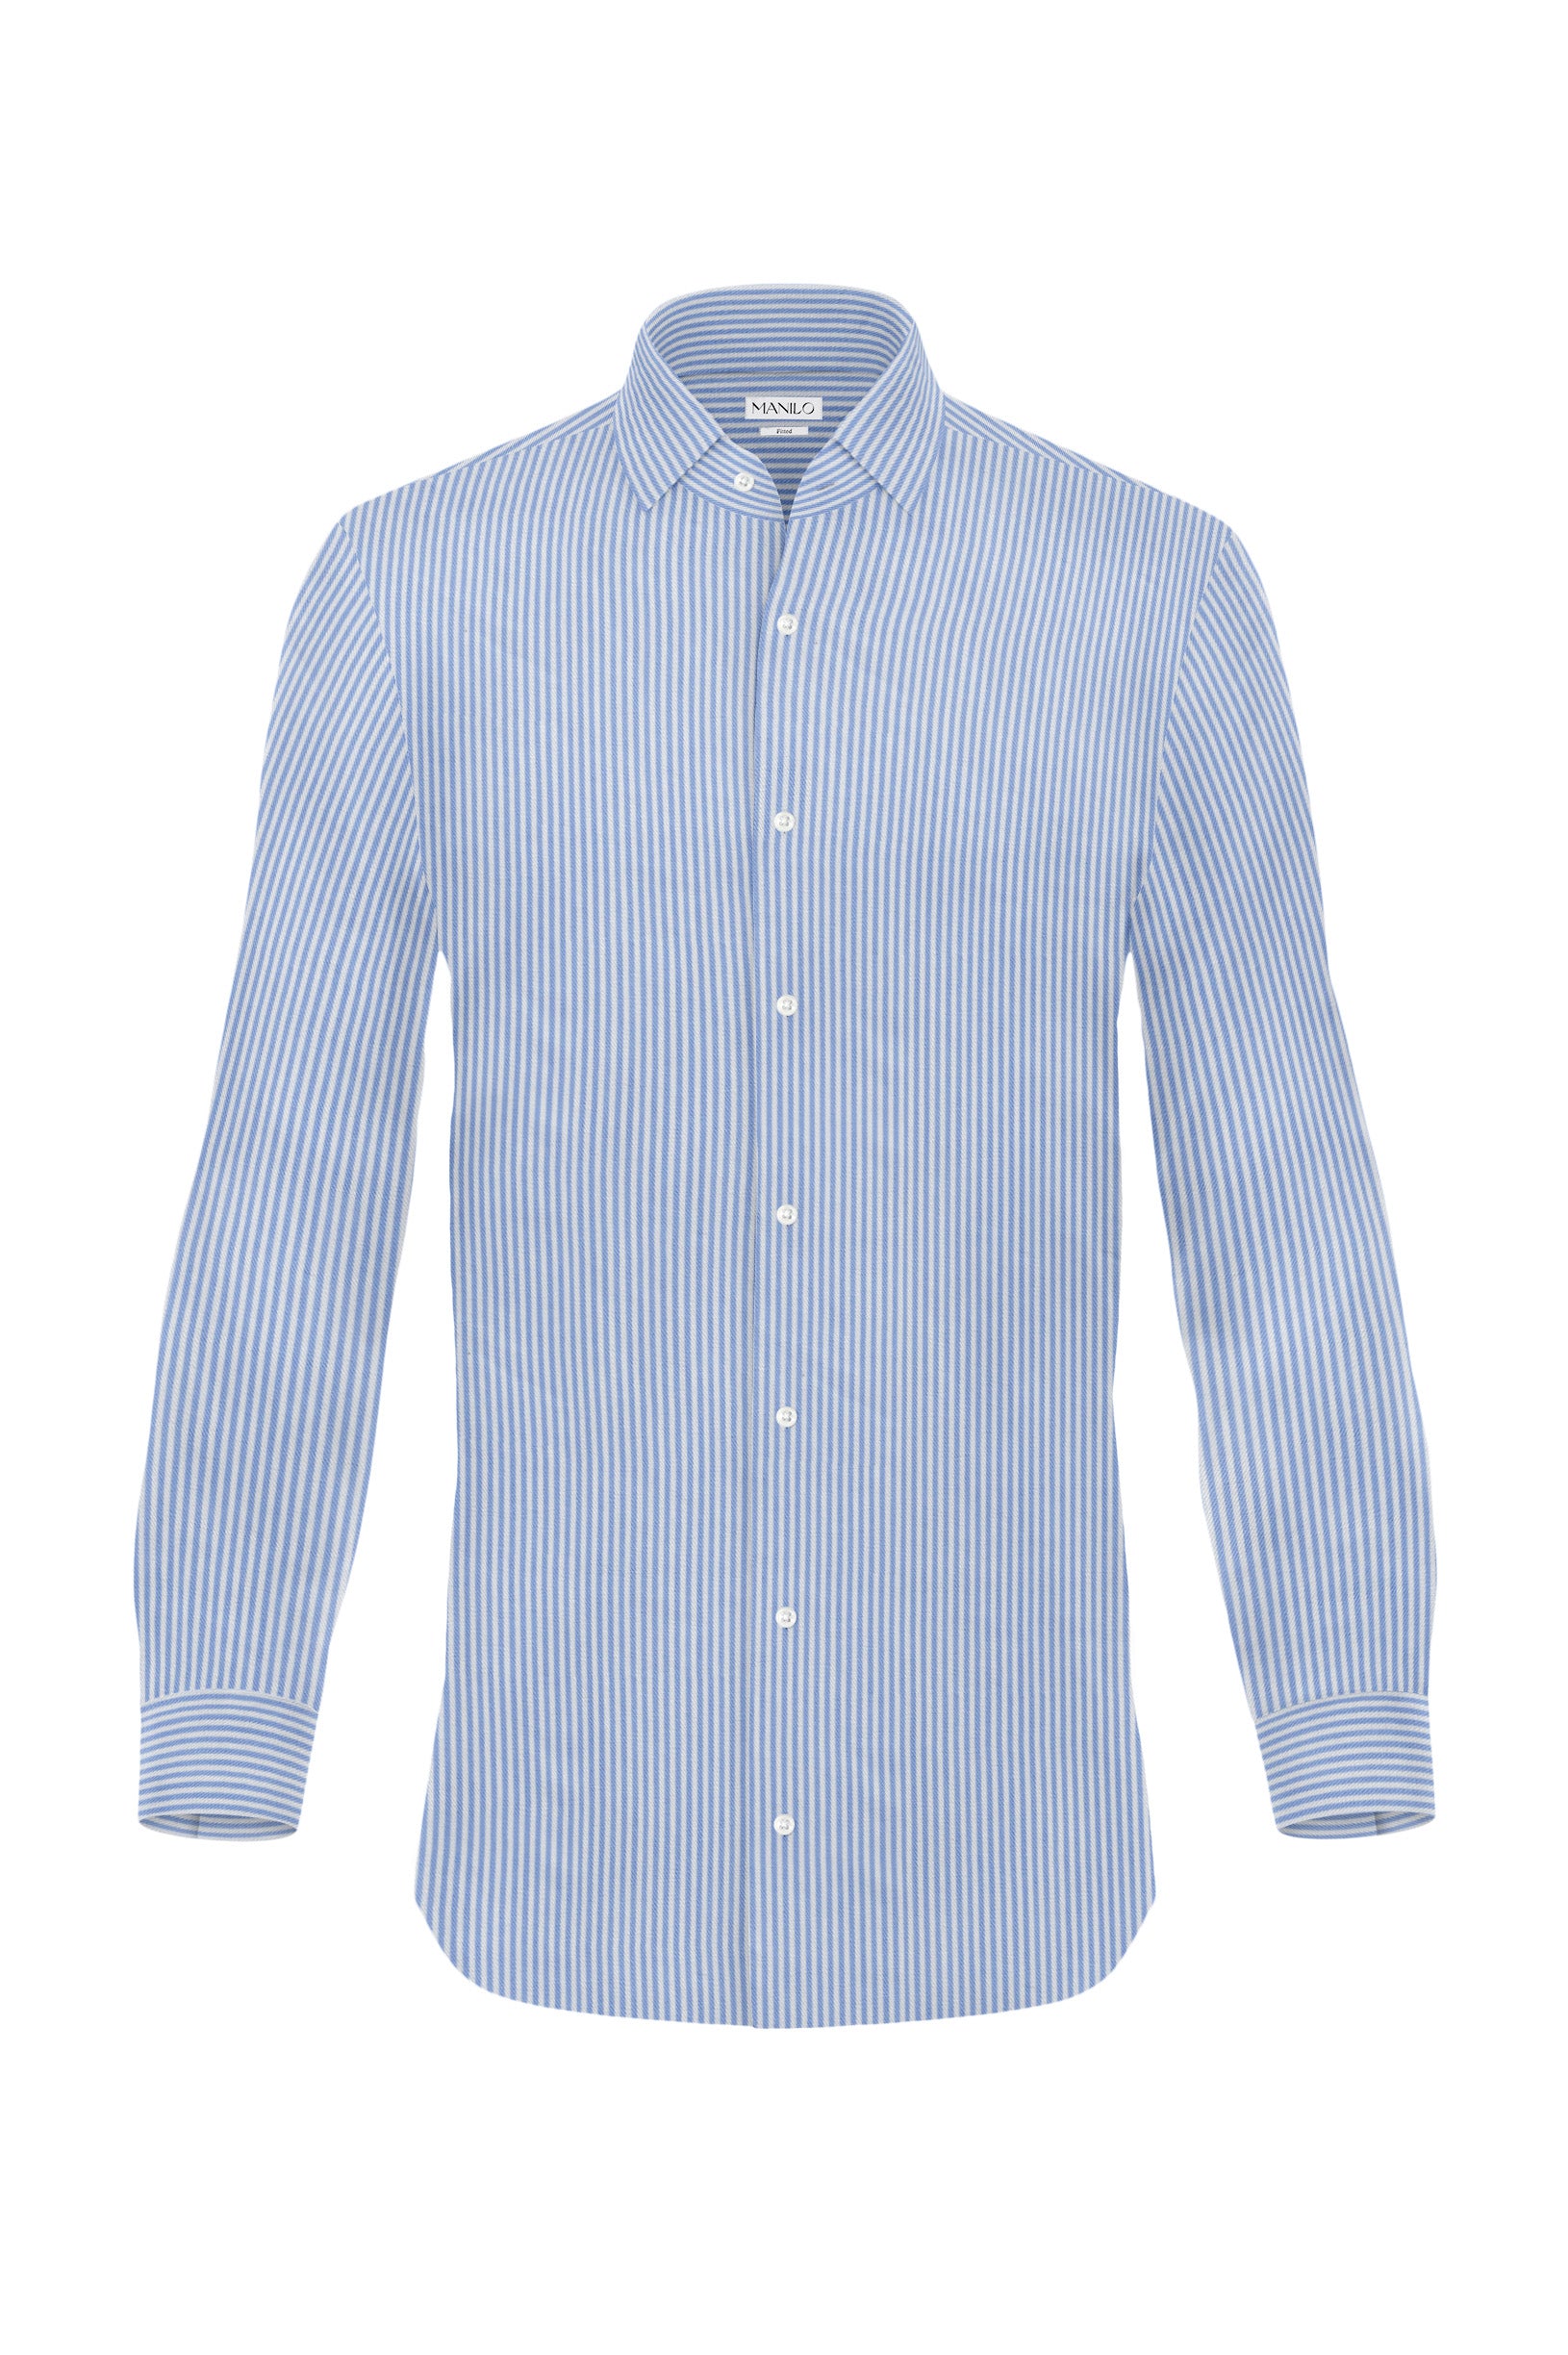 Hochwertiges Twill-Hemd Streifen Hellblau Fitted (schmal geschnitten)